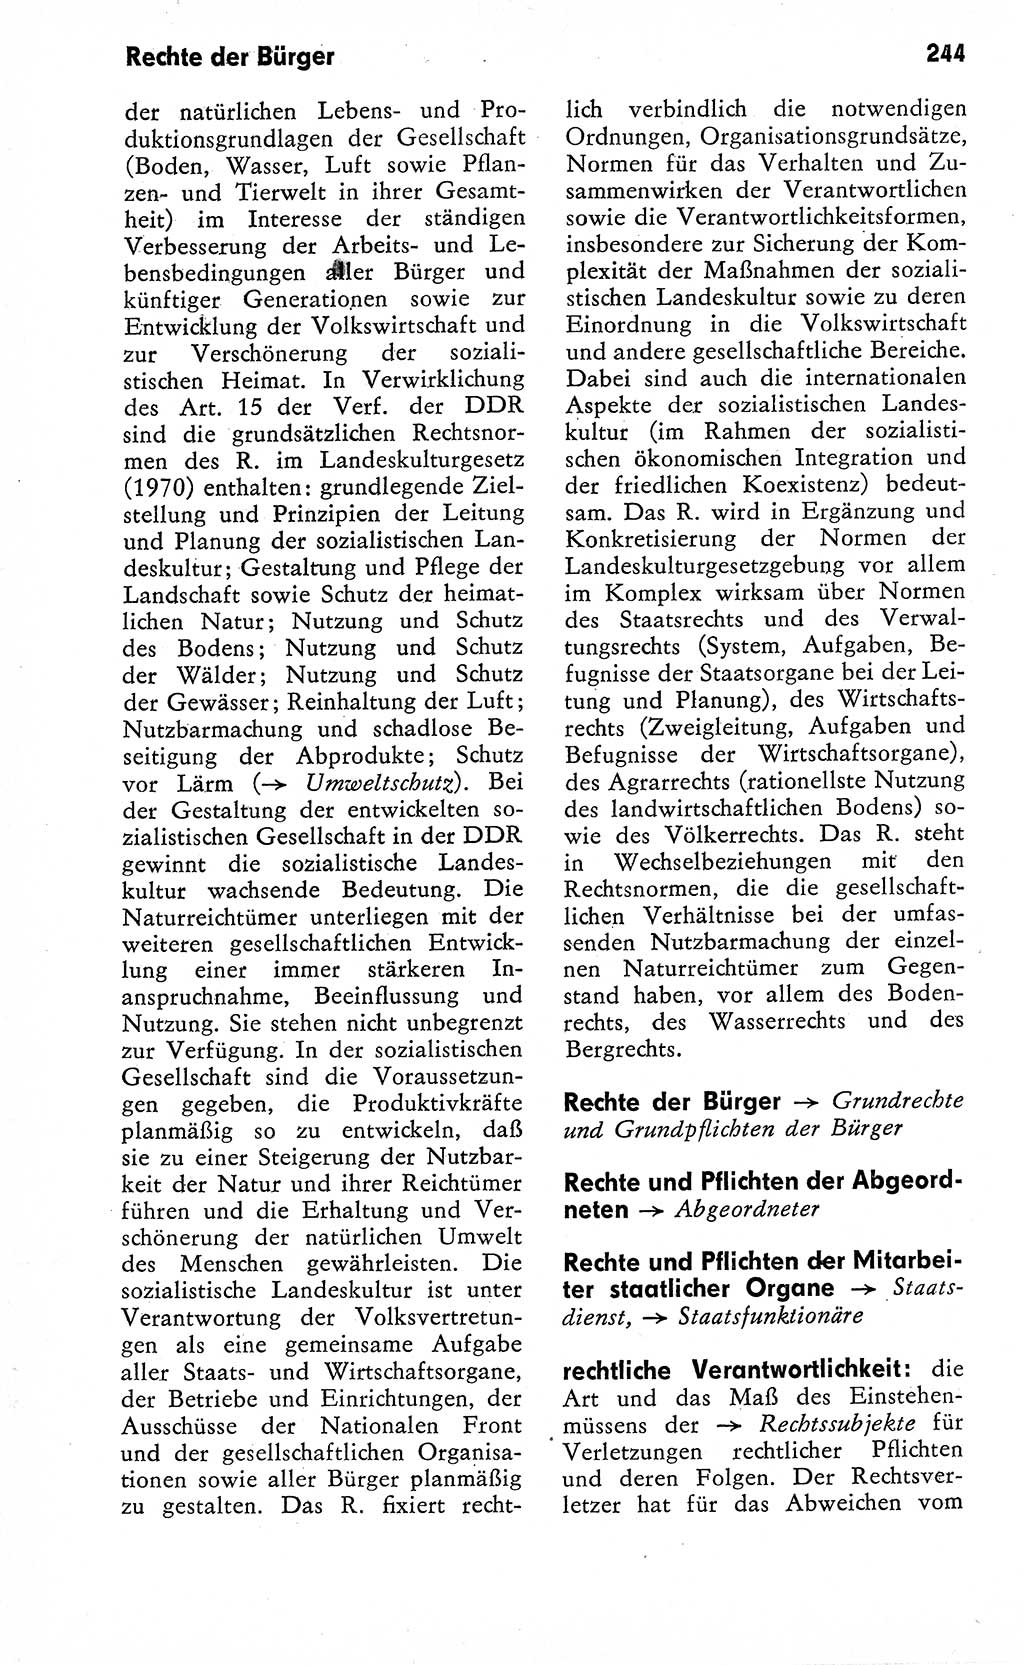 Wörterbuch zum sozialistischen Staat [Deutsche Demokratische Republik (DDR)] 1974, Seite 244 (Wb. soz. St. DDR 1974, S. 244)